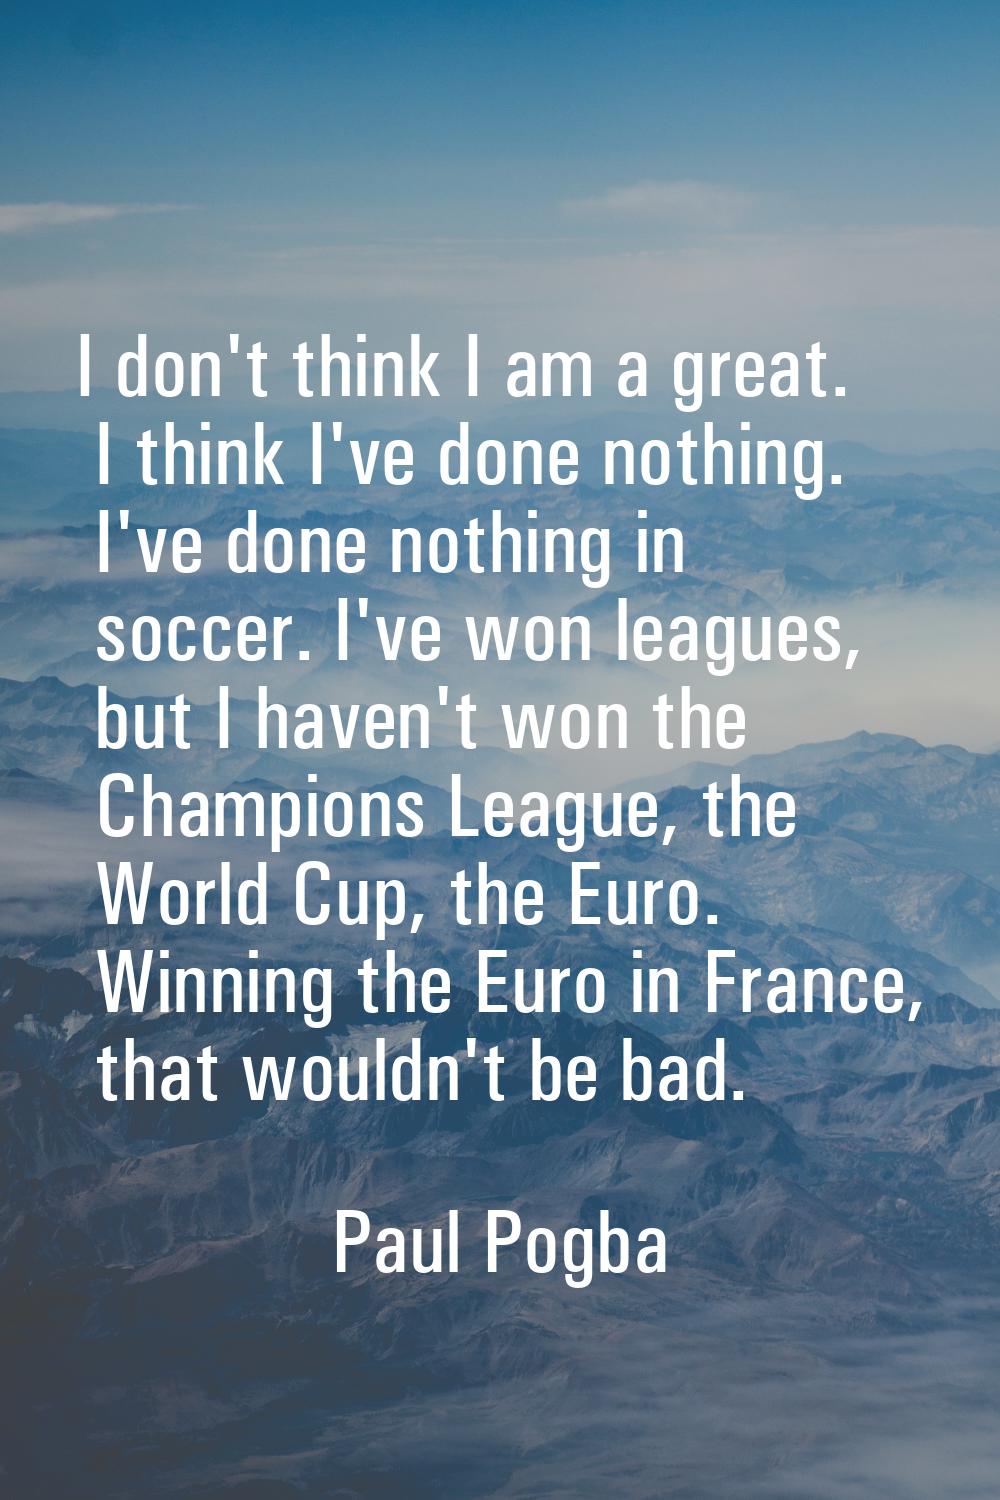 I don't think I am a great. I think I've done nothing. I've done nothing in soccer. I've won league